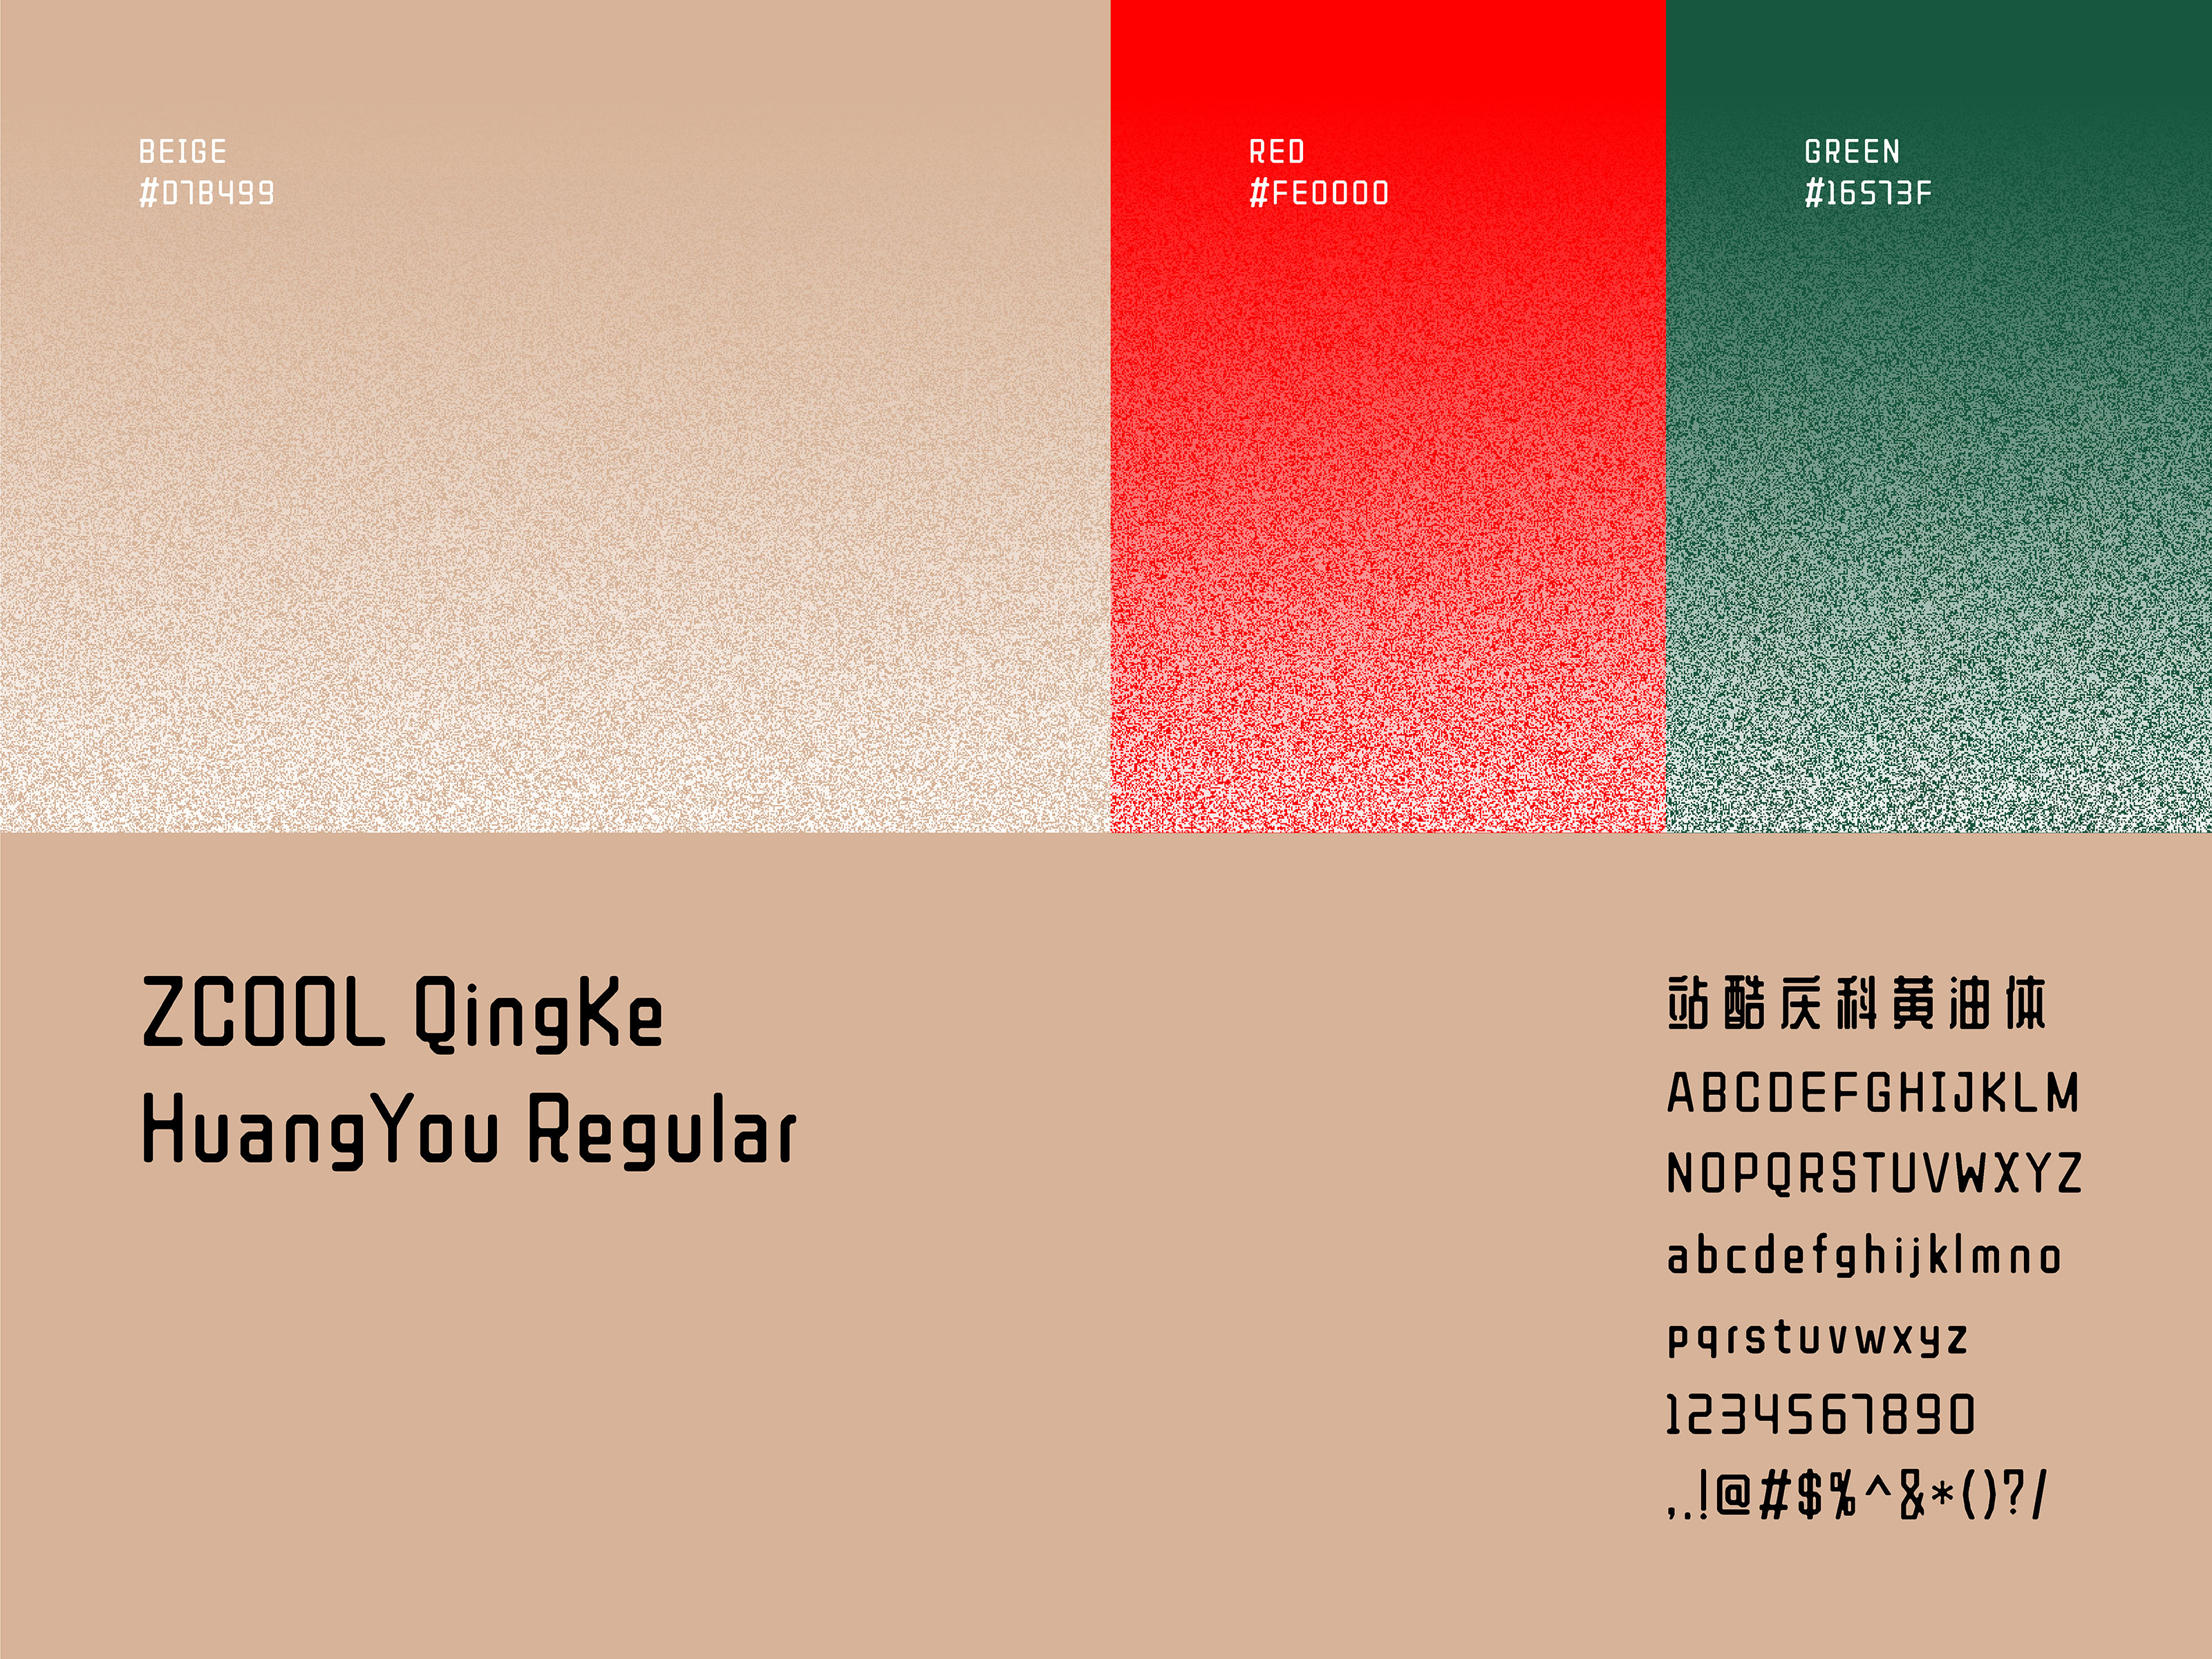 醒醒咖啡 brand colour and font / typeface usage